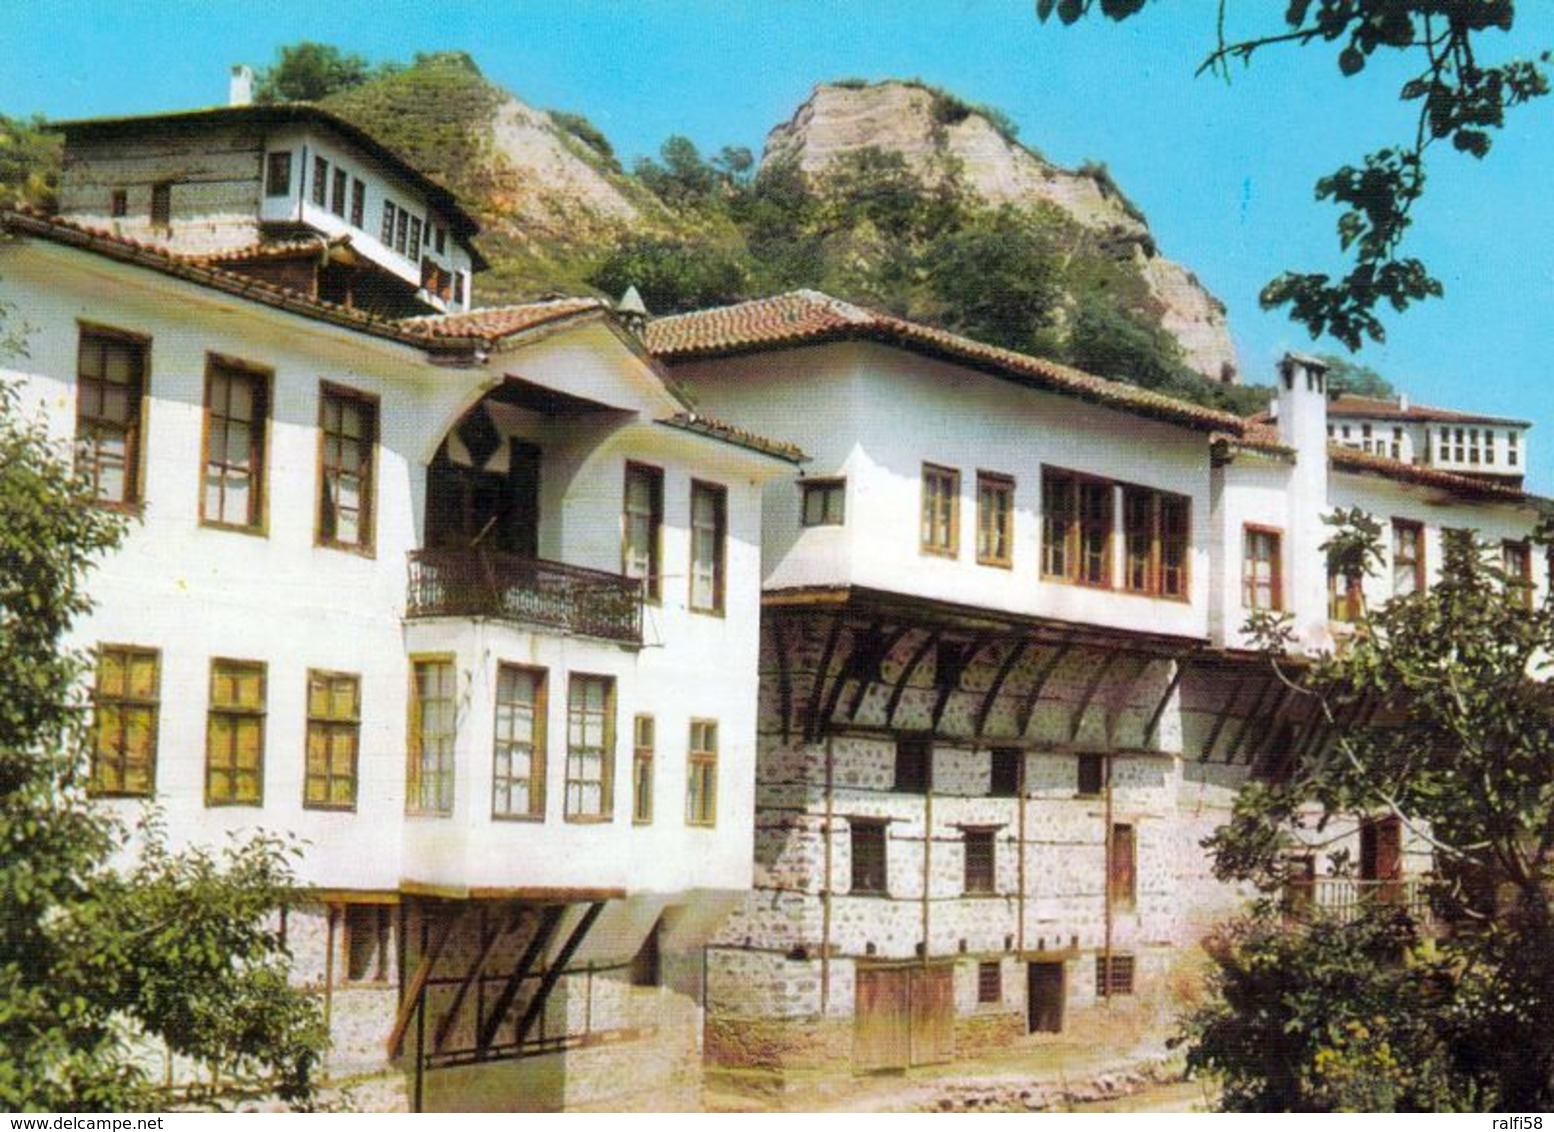 1 AK Bulgarien * Hist. Häuser In Melnik - Die Kleinste Stadt Bulgariens Mit Weniger Als 300 Einwohnern * - Bulgaria